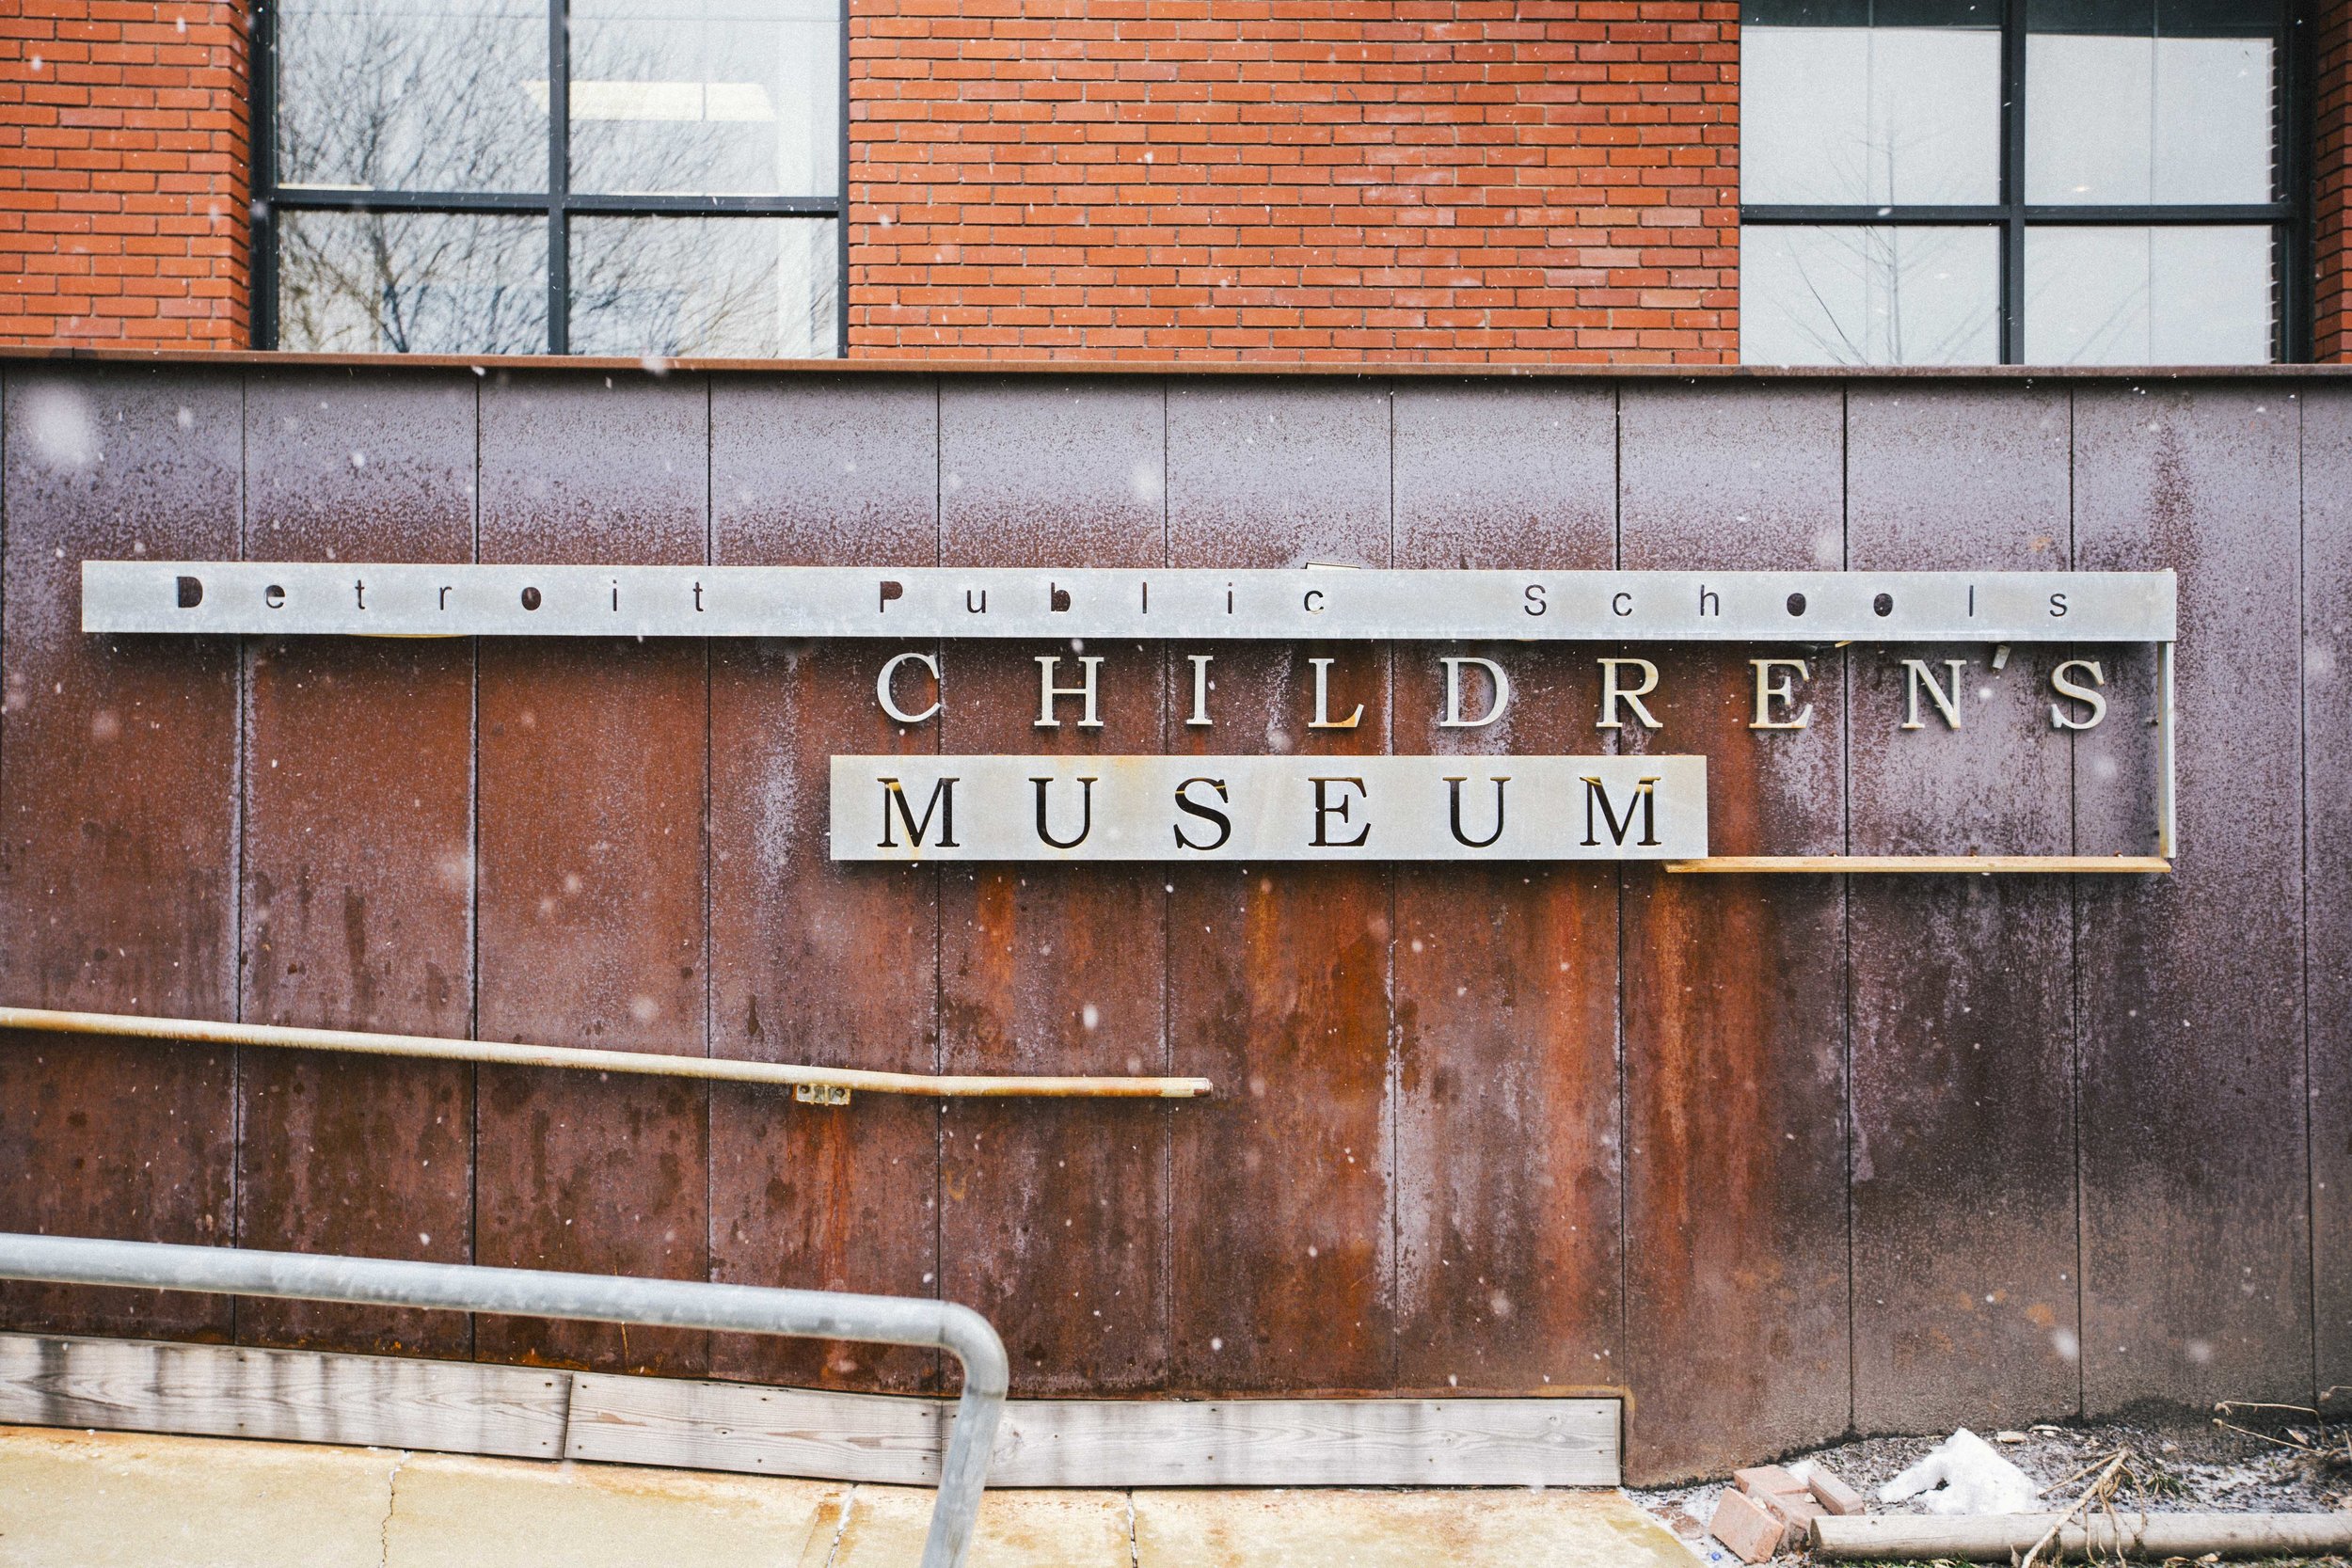 Detroit Childerens Museum (1 of 30).jpg